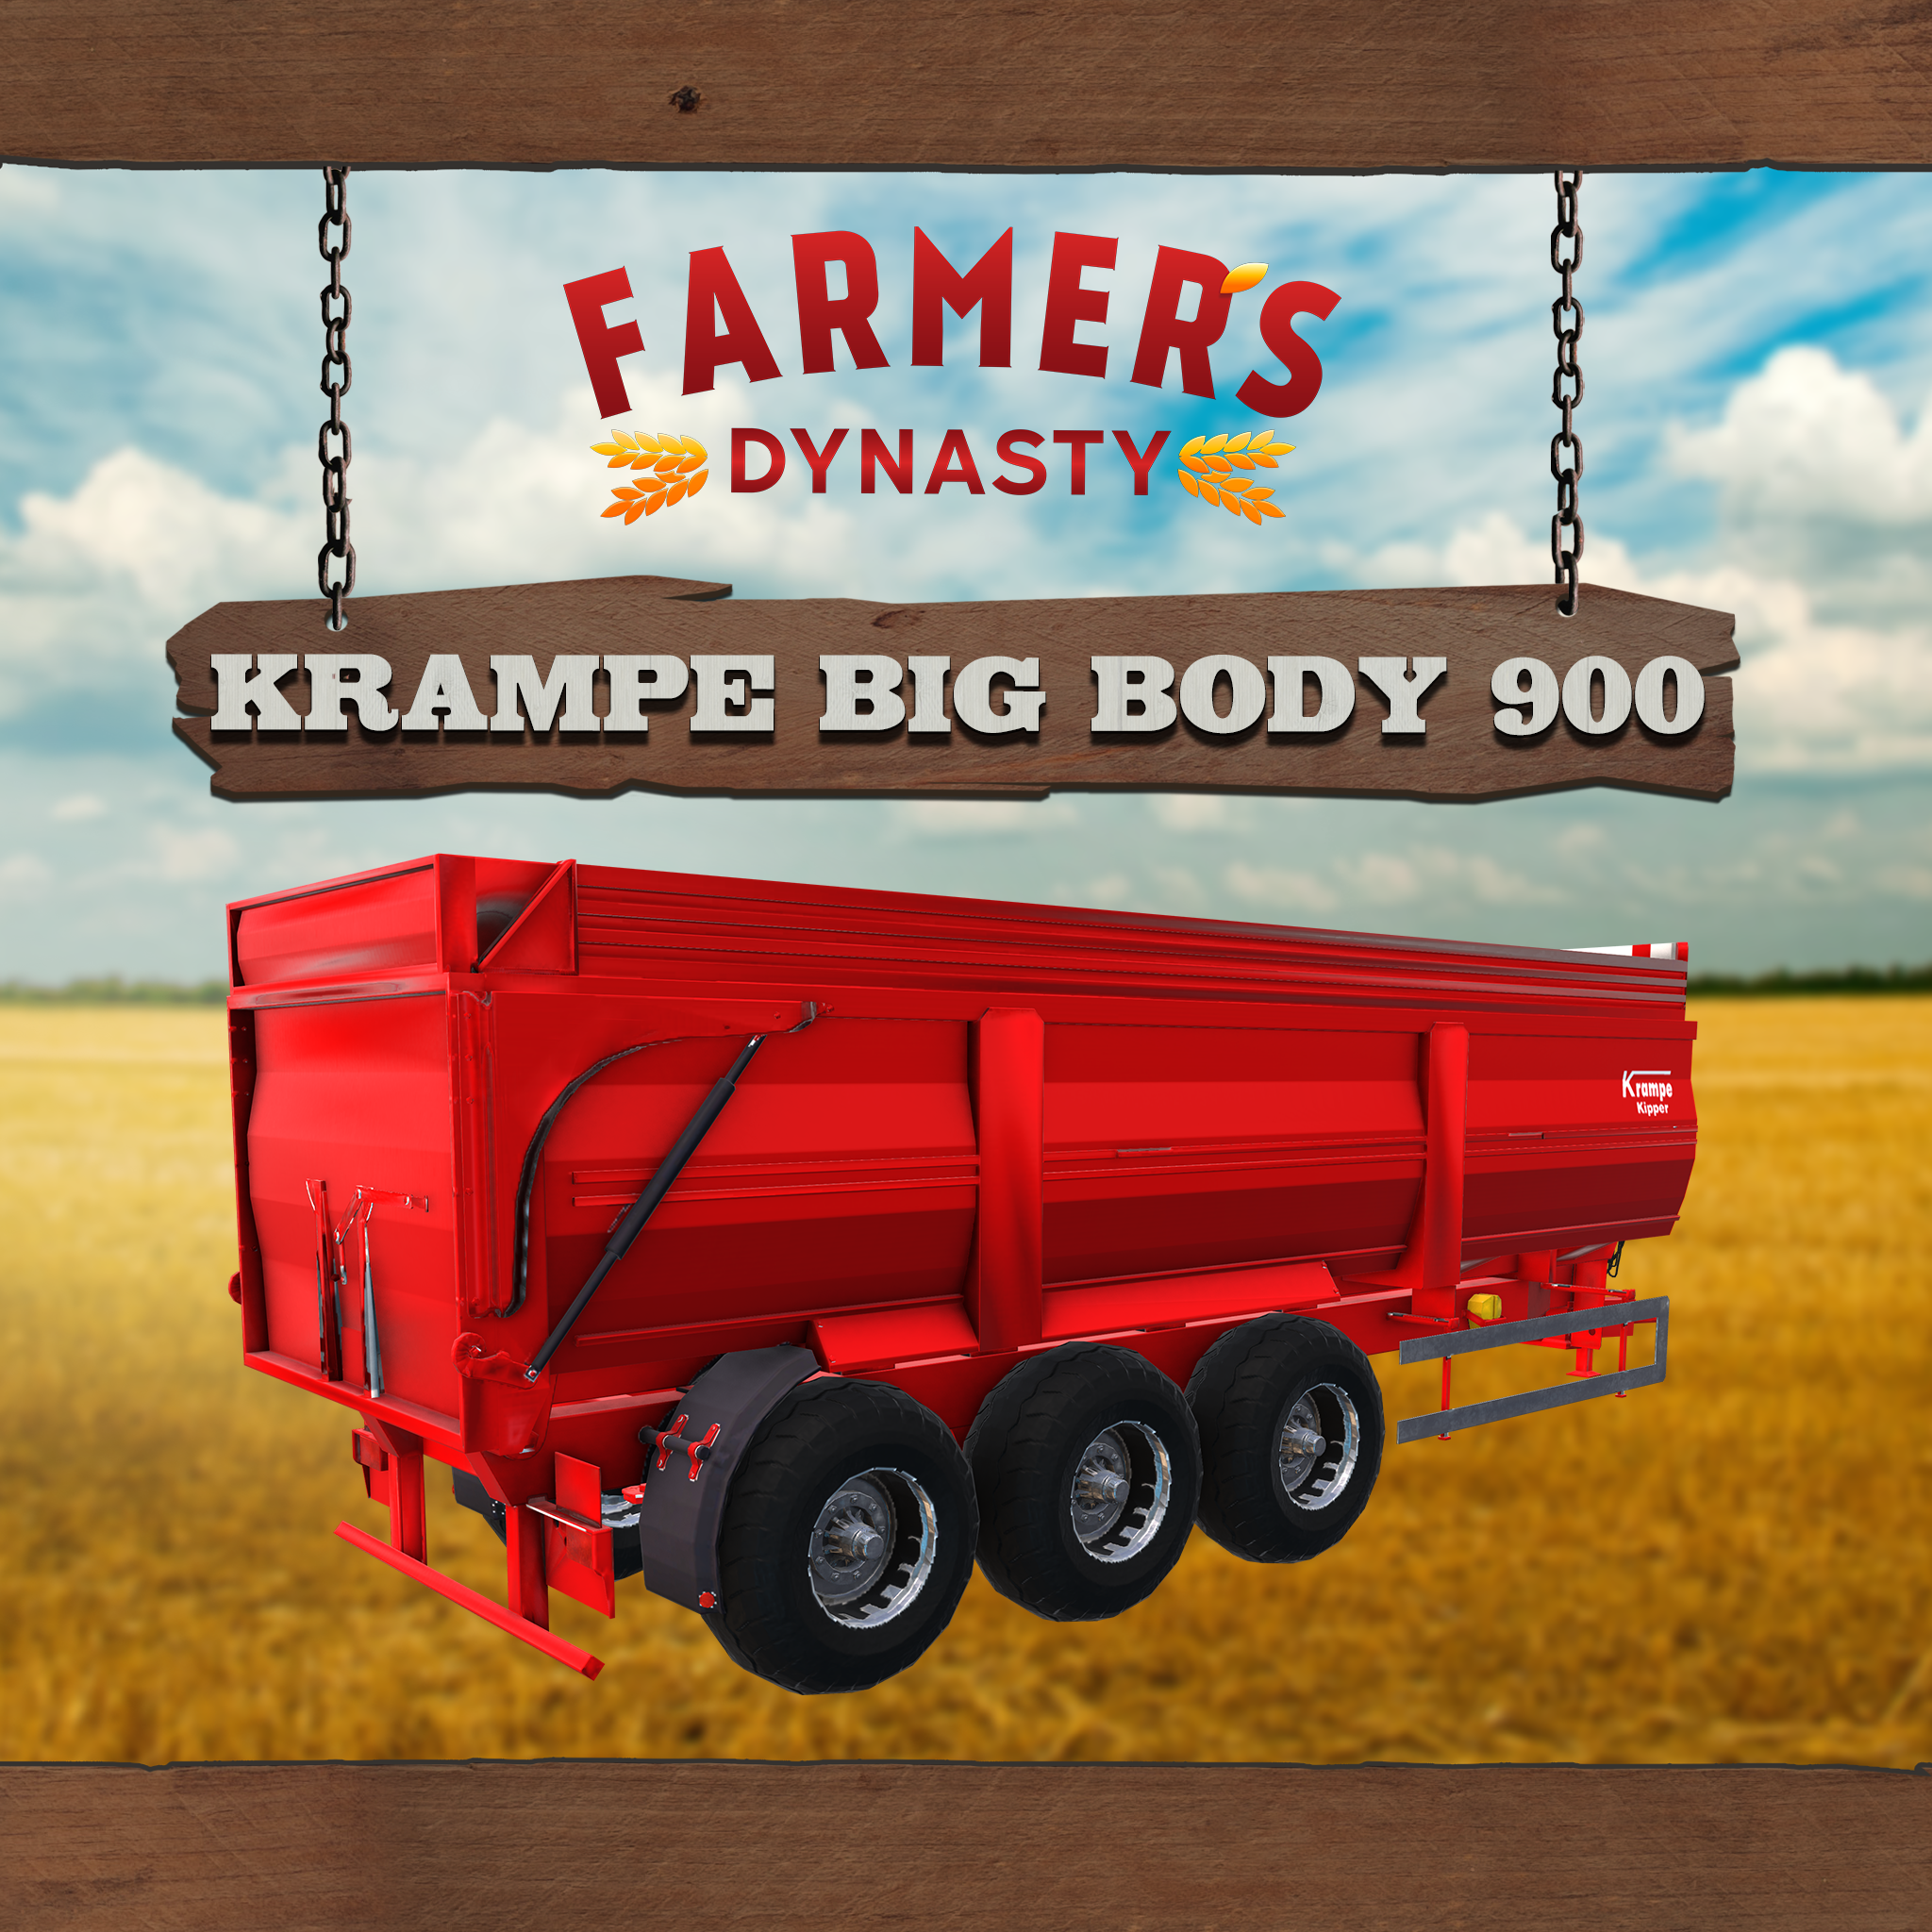 Farmer's Dynasty Krampe Big Body 900